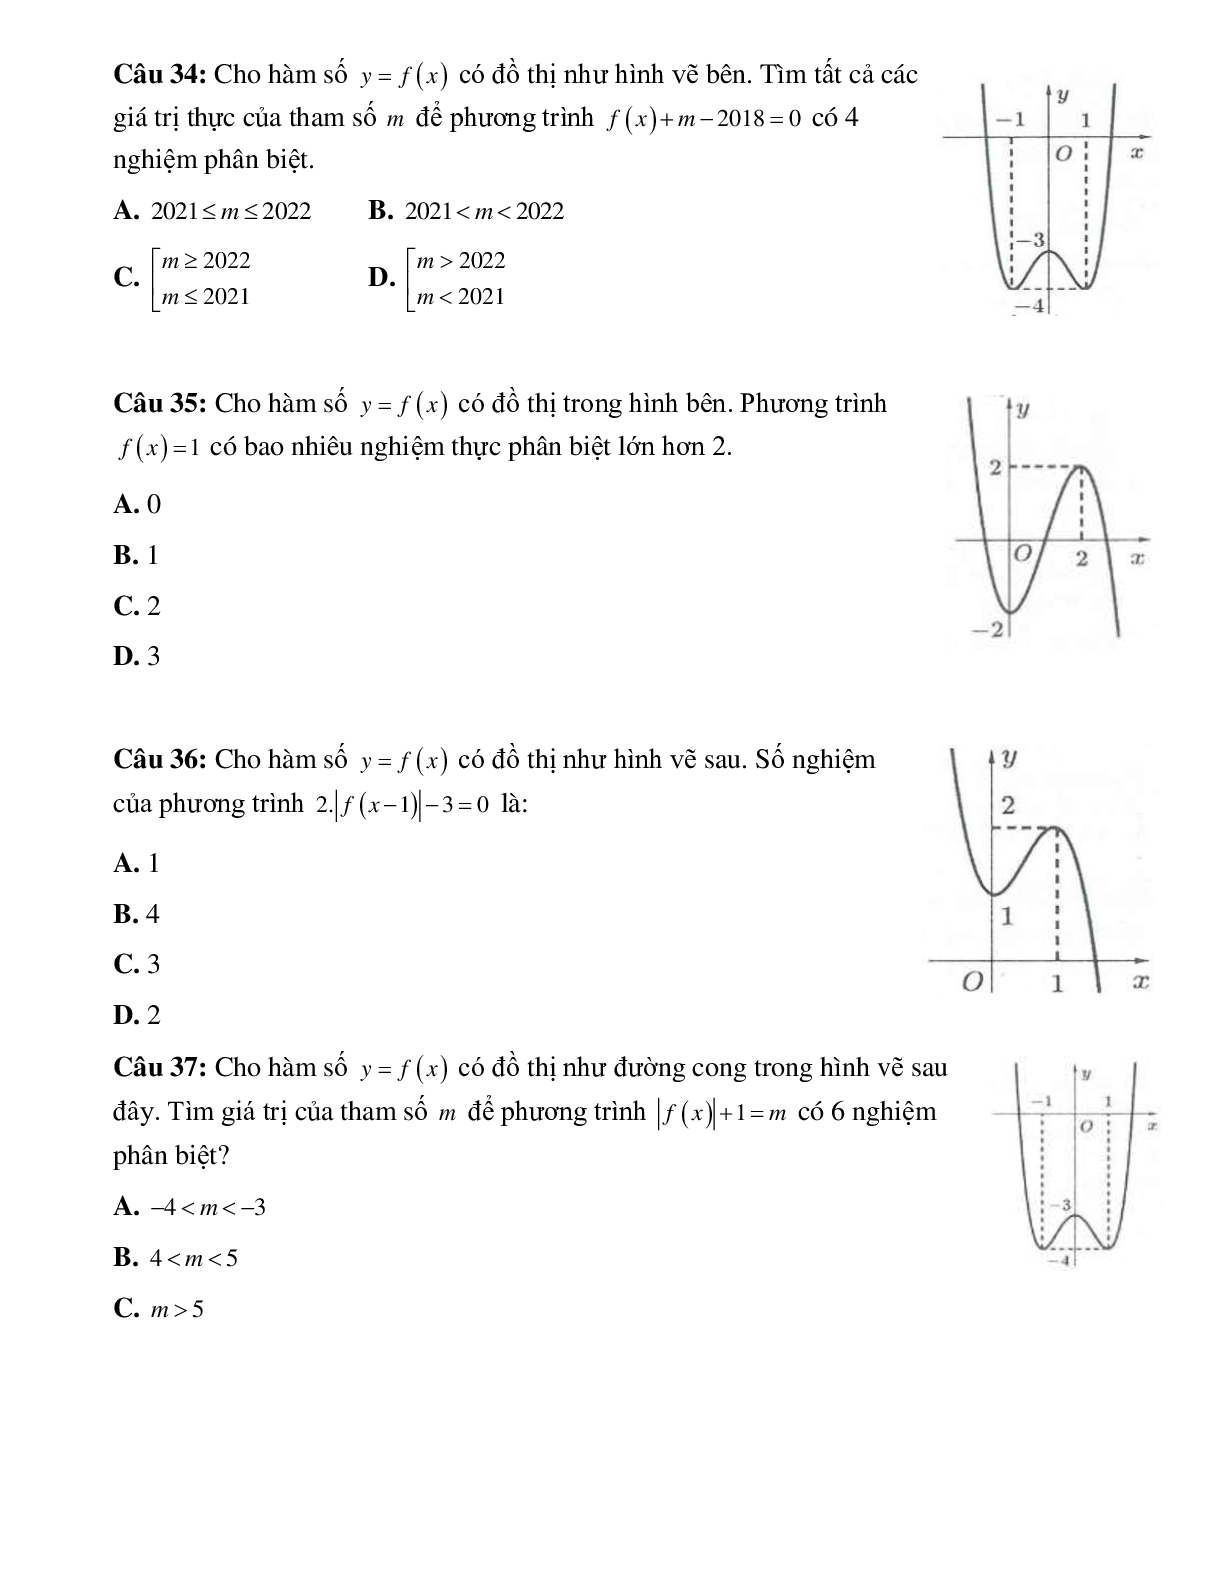 Biến luận số nghiệm của phương trình bằng đồ thị (trang 8)